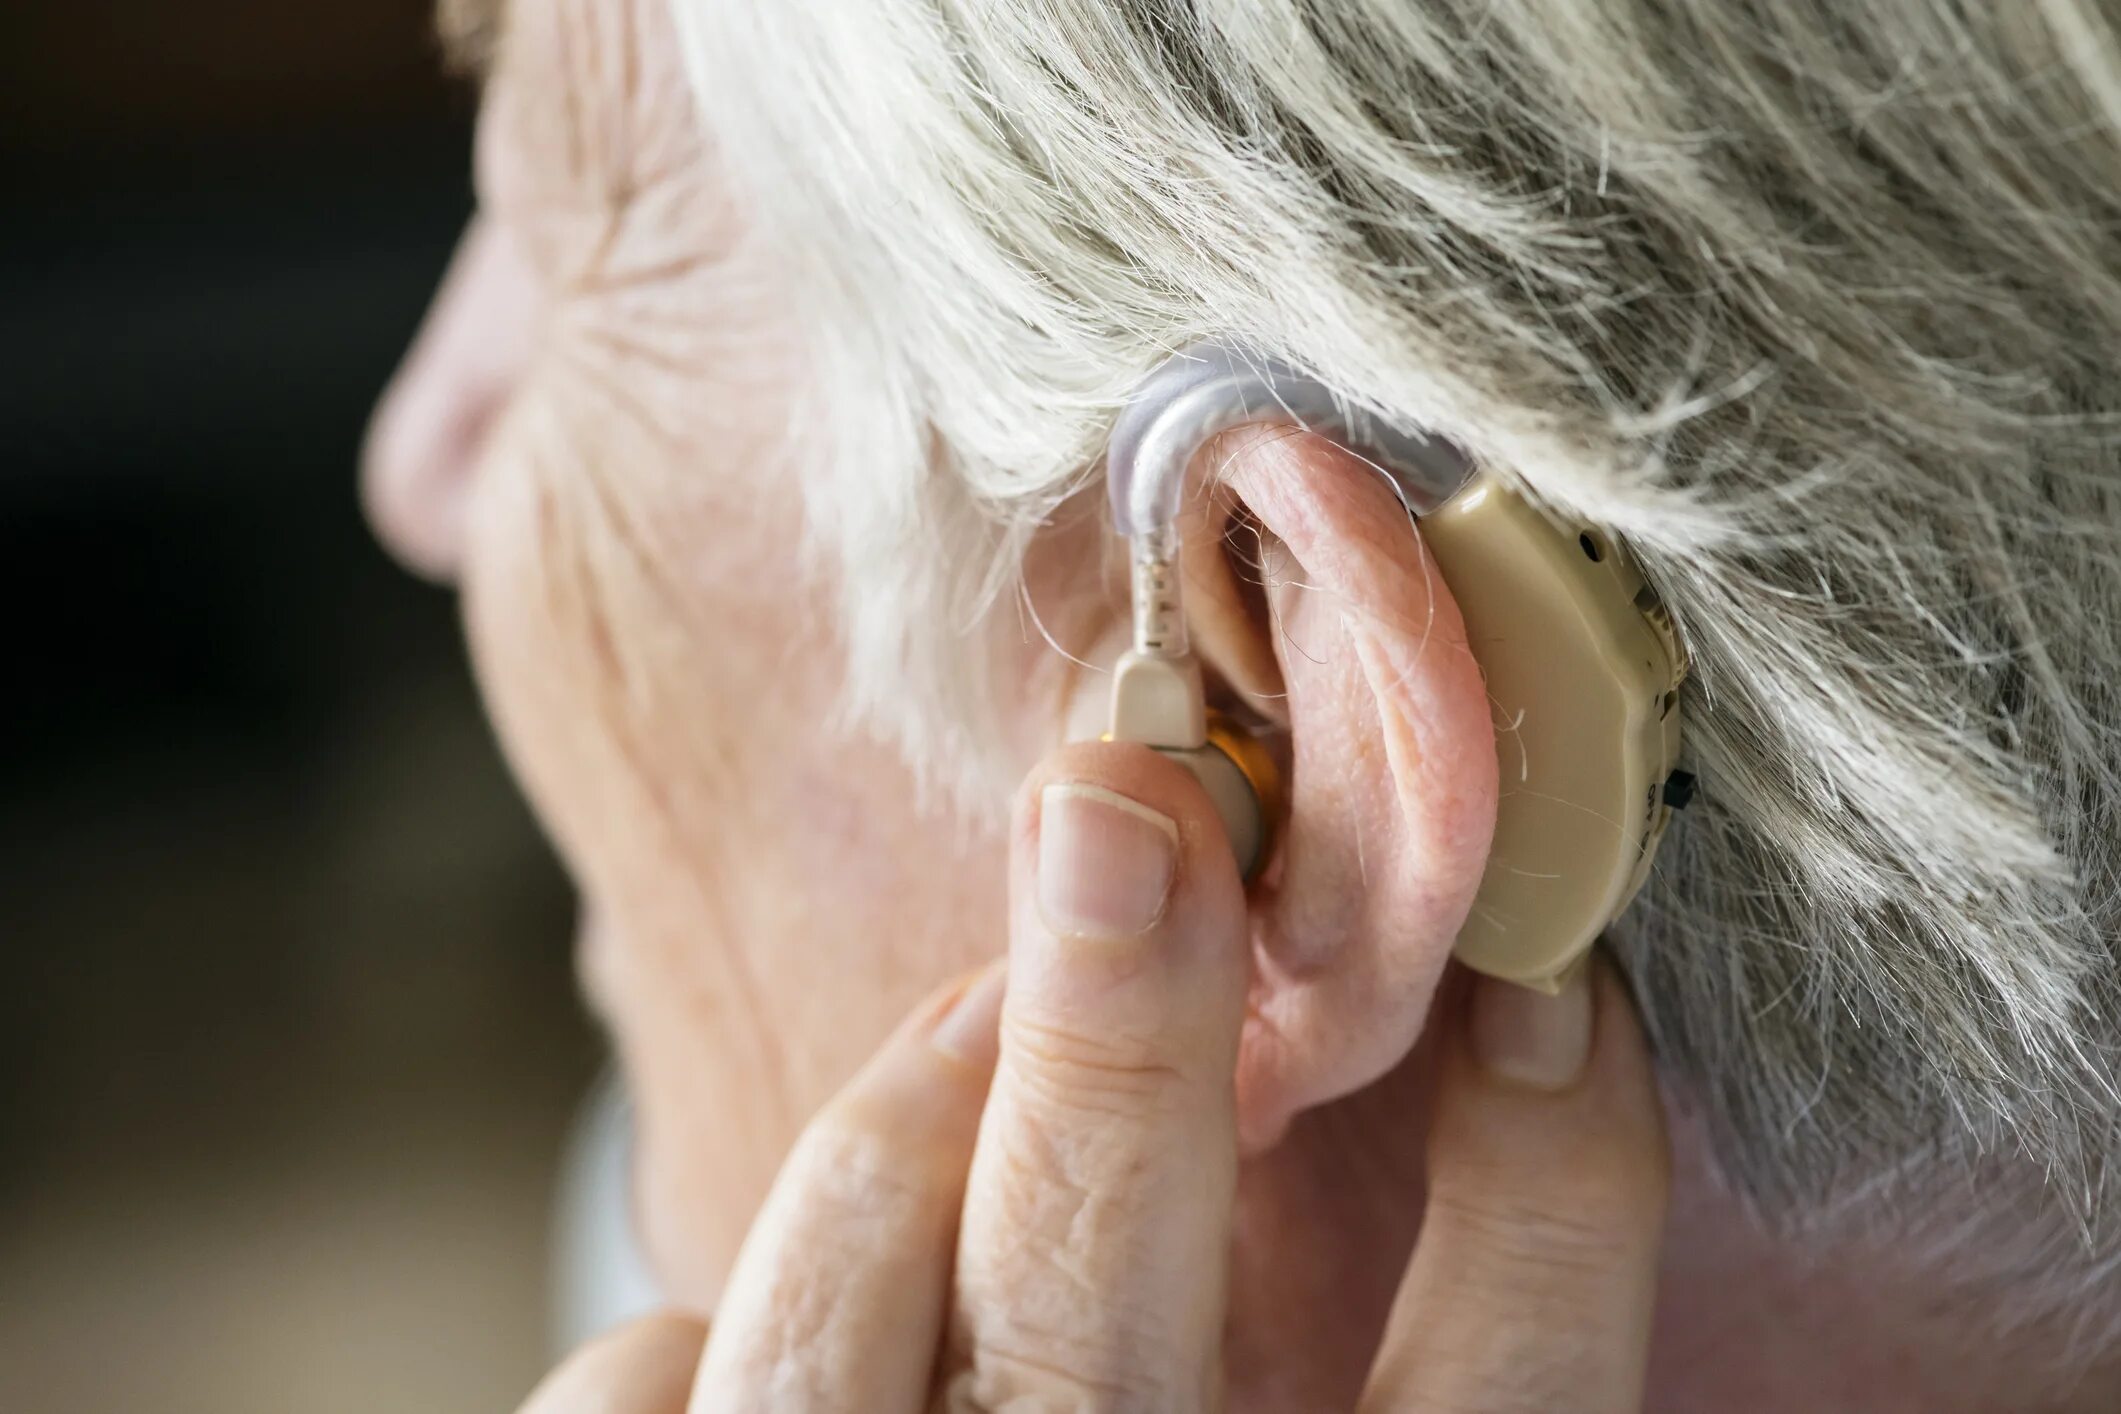 Слуховой аппарат для слабослышащих. Aurica слуховой аппарат. Hearing Aid слуховой аппарат. Слуховые аппараты для пожилых людей. Старик со слуховым аппаратом.